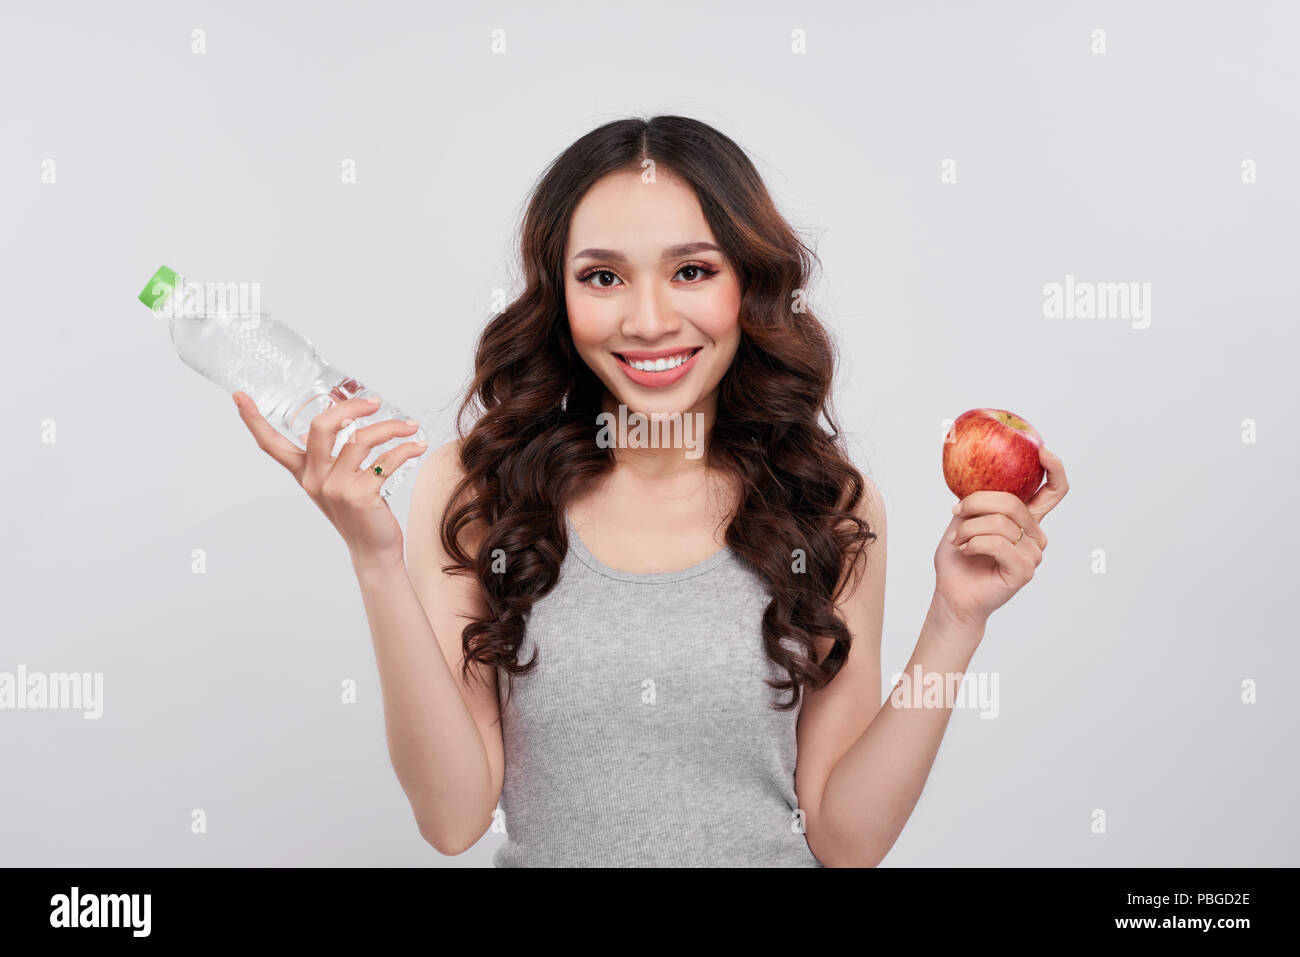 Asiatische Frau mit Smile holding Wasserflasche und Apple auf weißem Hintergrund, gesunde Lebensstile Konzept Stockfoto